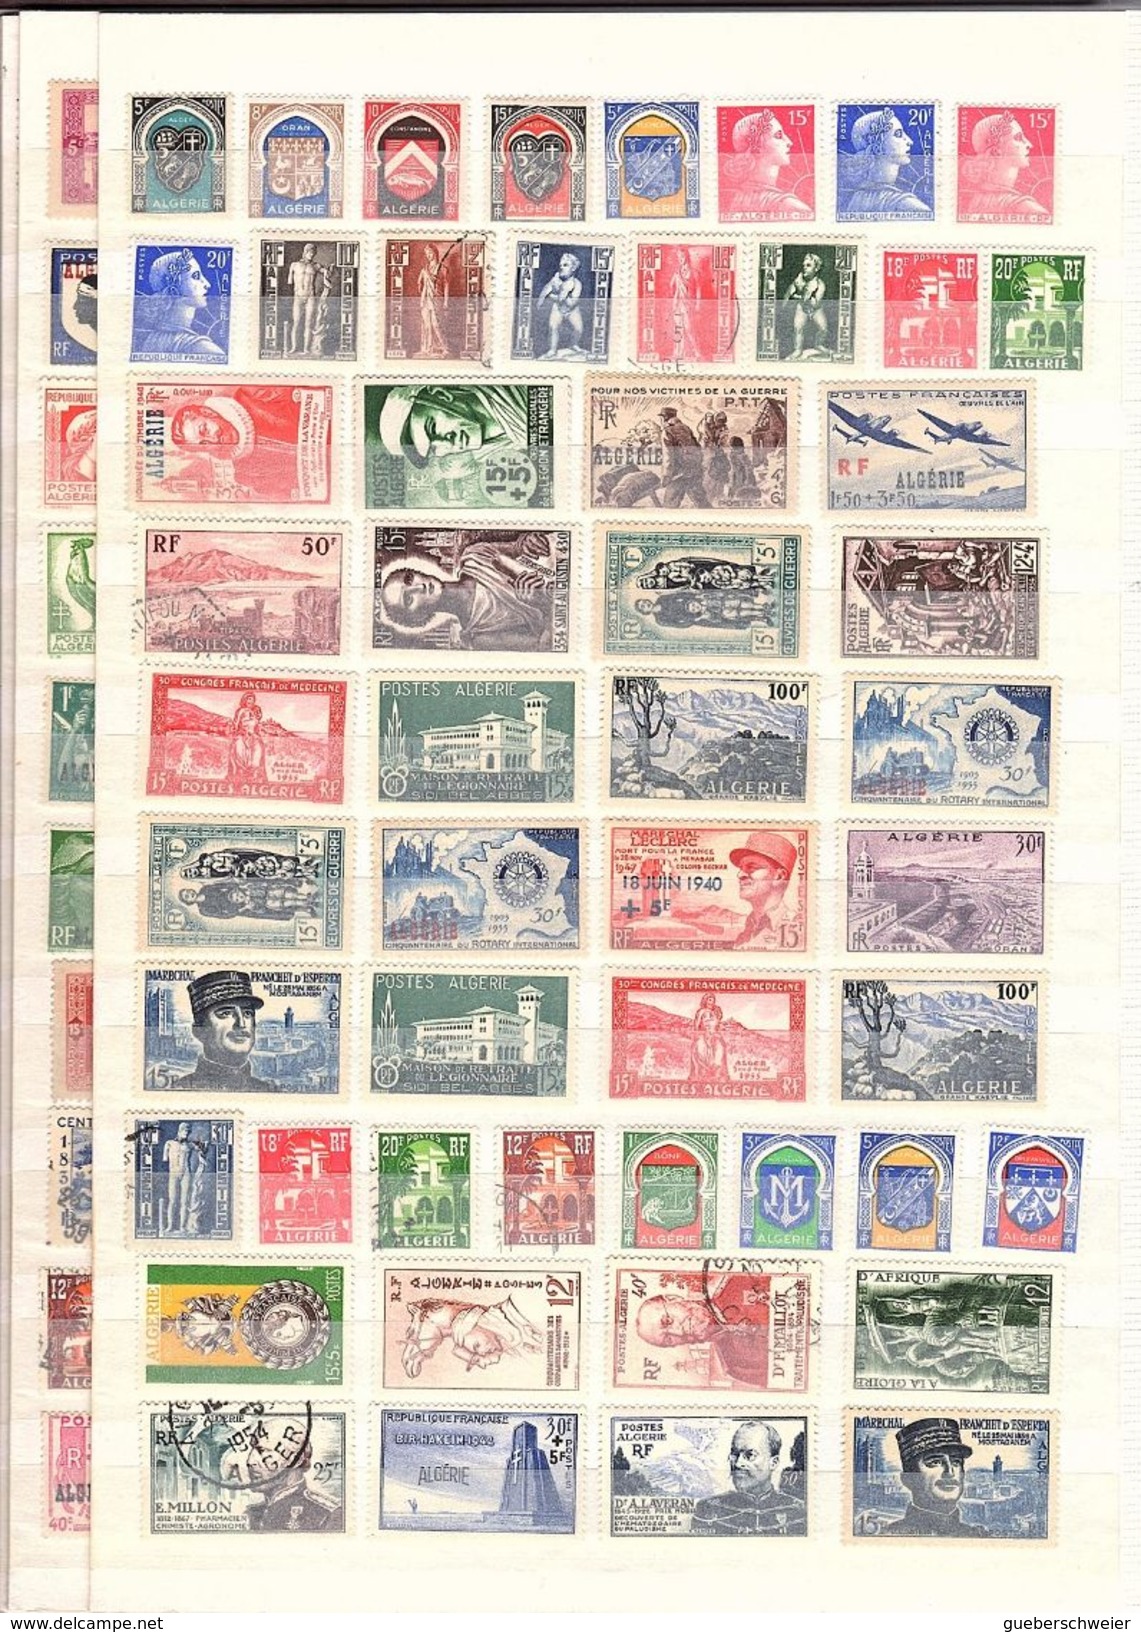 classeur de 64 pages avec des milliers de timbres dont anciennes Colonies françaises, anglaises voir scans avec variétés